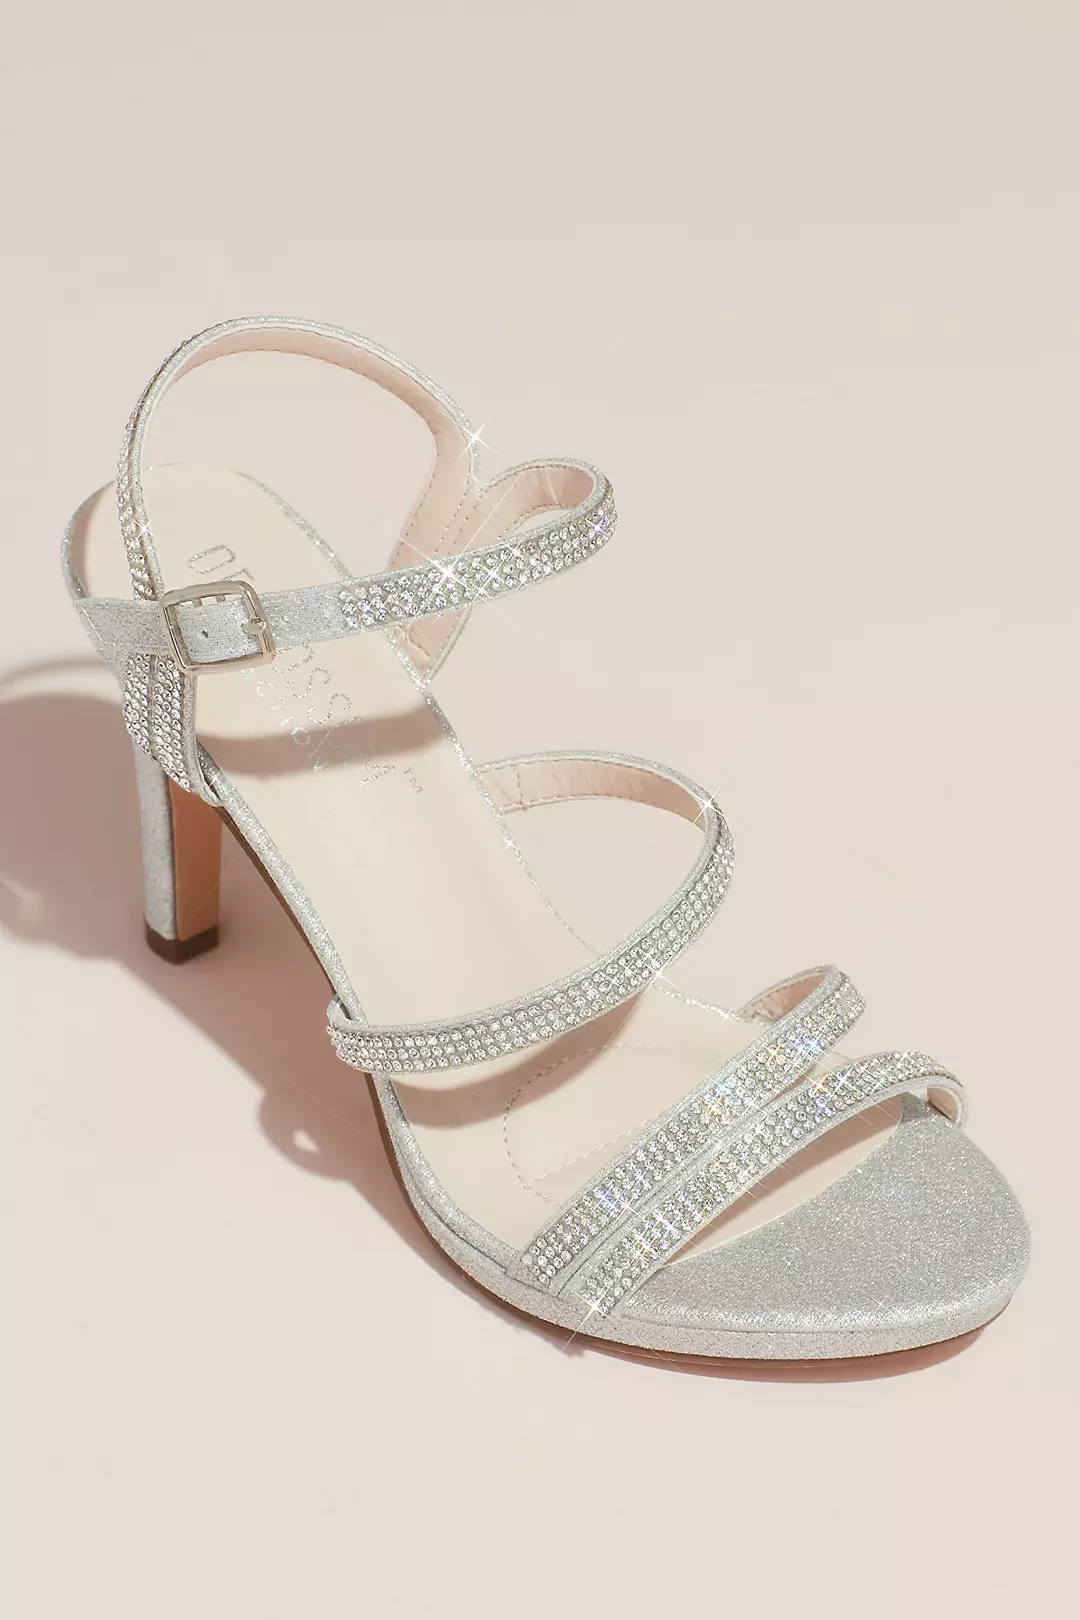 Pave Crystal Straps Glitter Platform Sandals Image